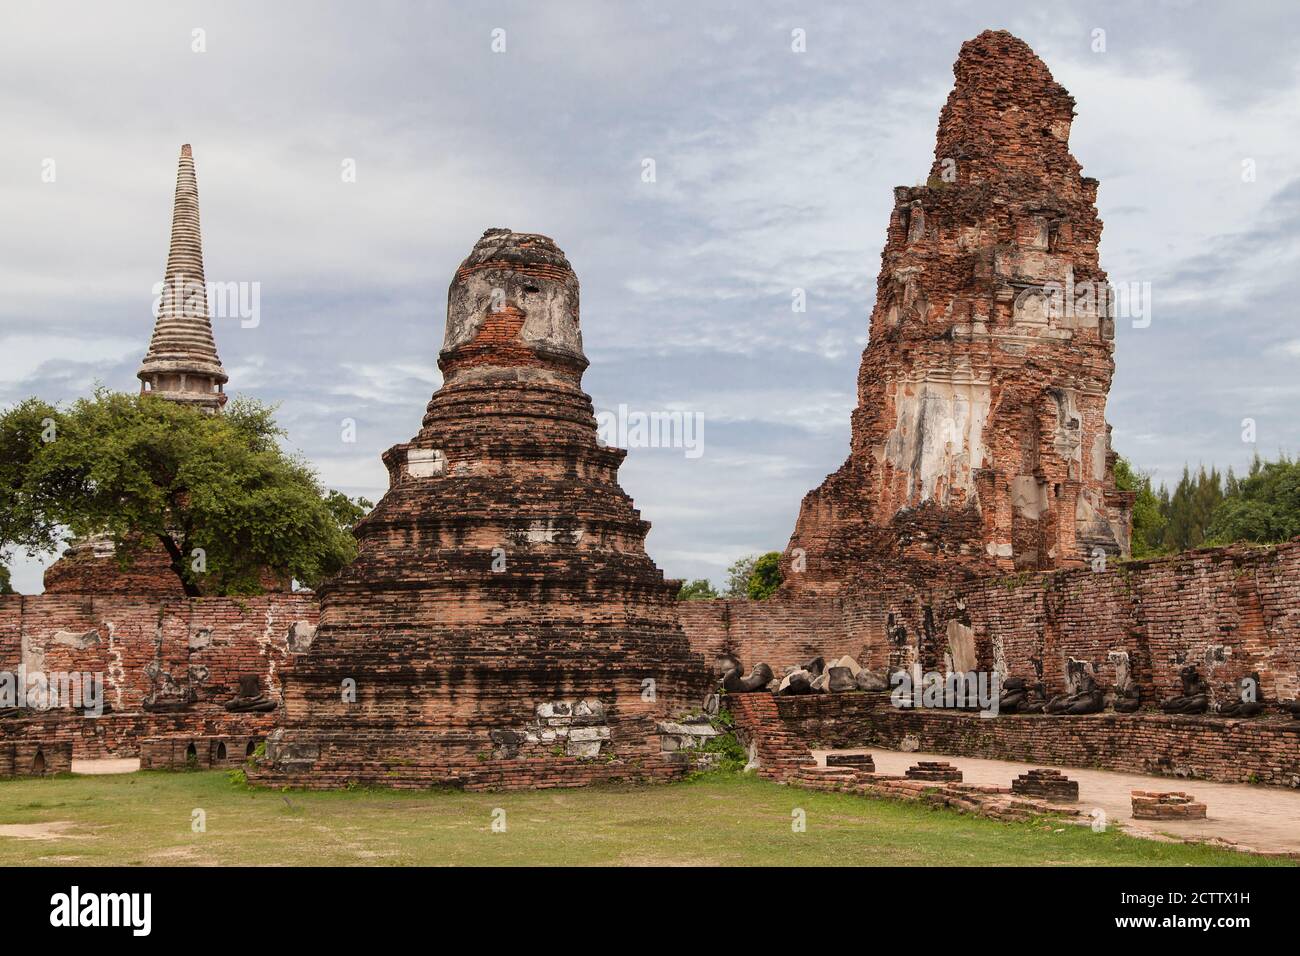 Ruins of Wat Mahathat in Ayutthaya, Thailand. Stock Photo